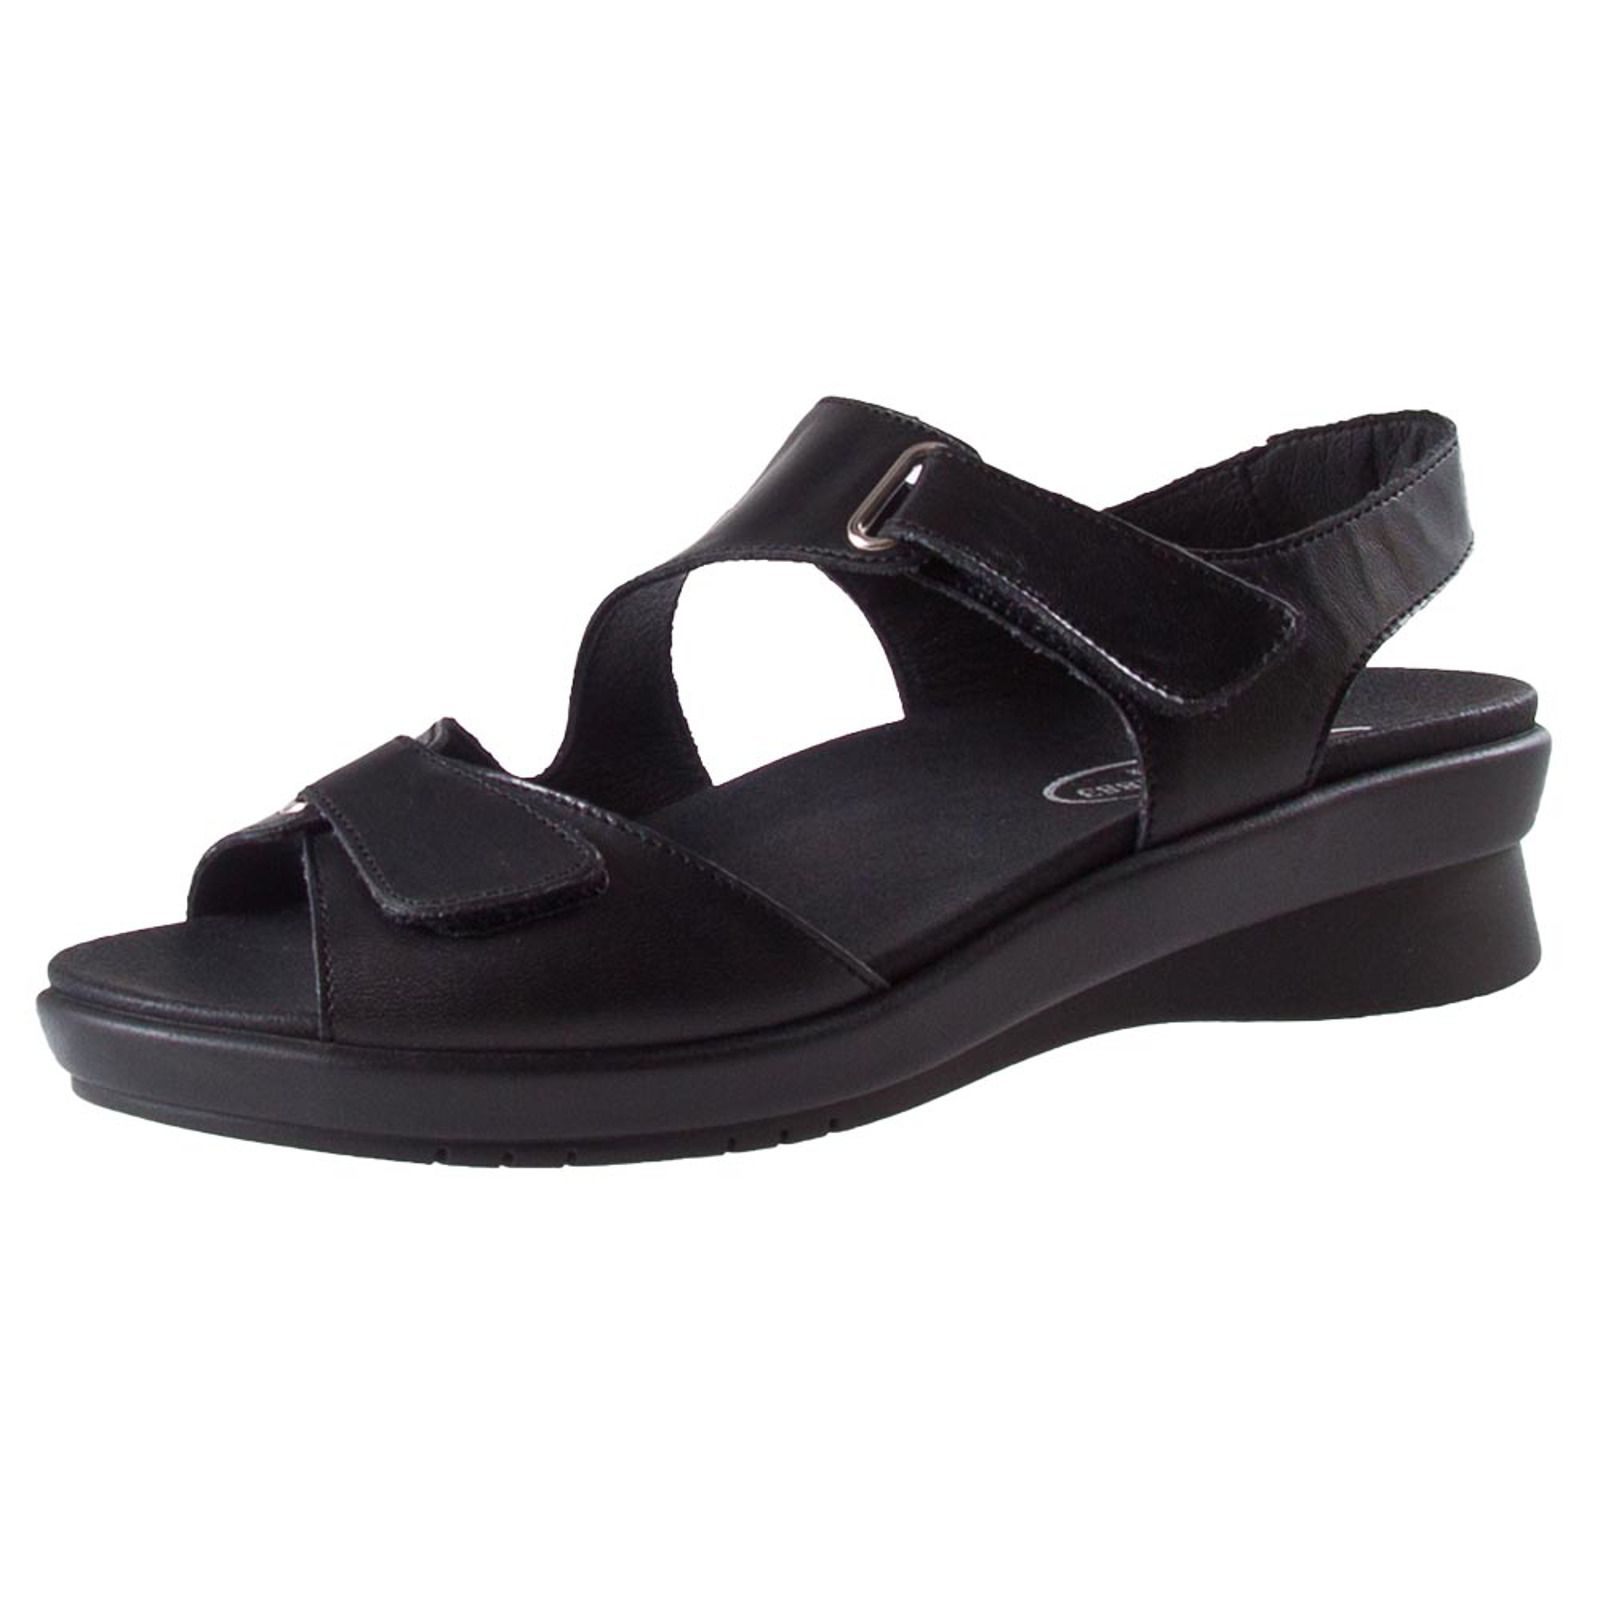 Bijproduct nauwkeurig Bijzettafeltje Stijlvolle sandaal met uitneembaar voetbed van de Zwartjes Comfort lijn